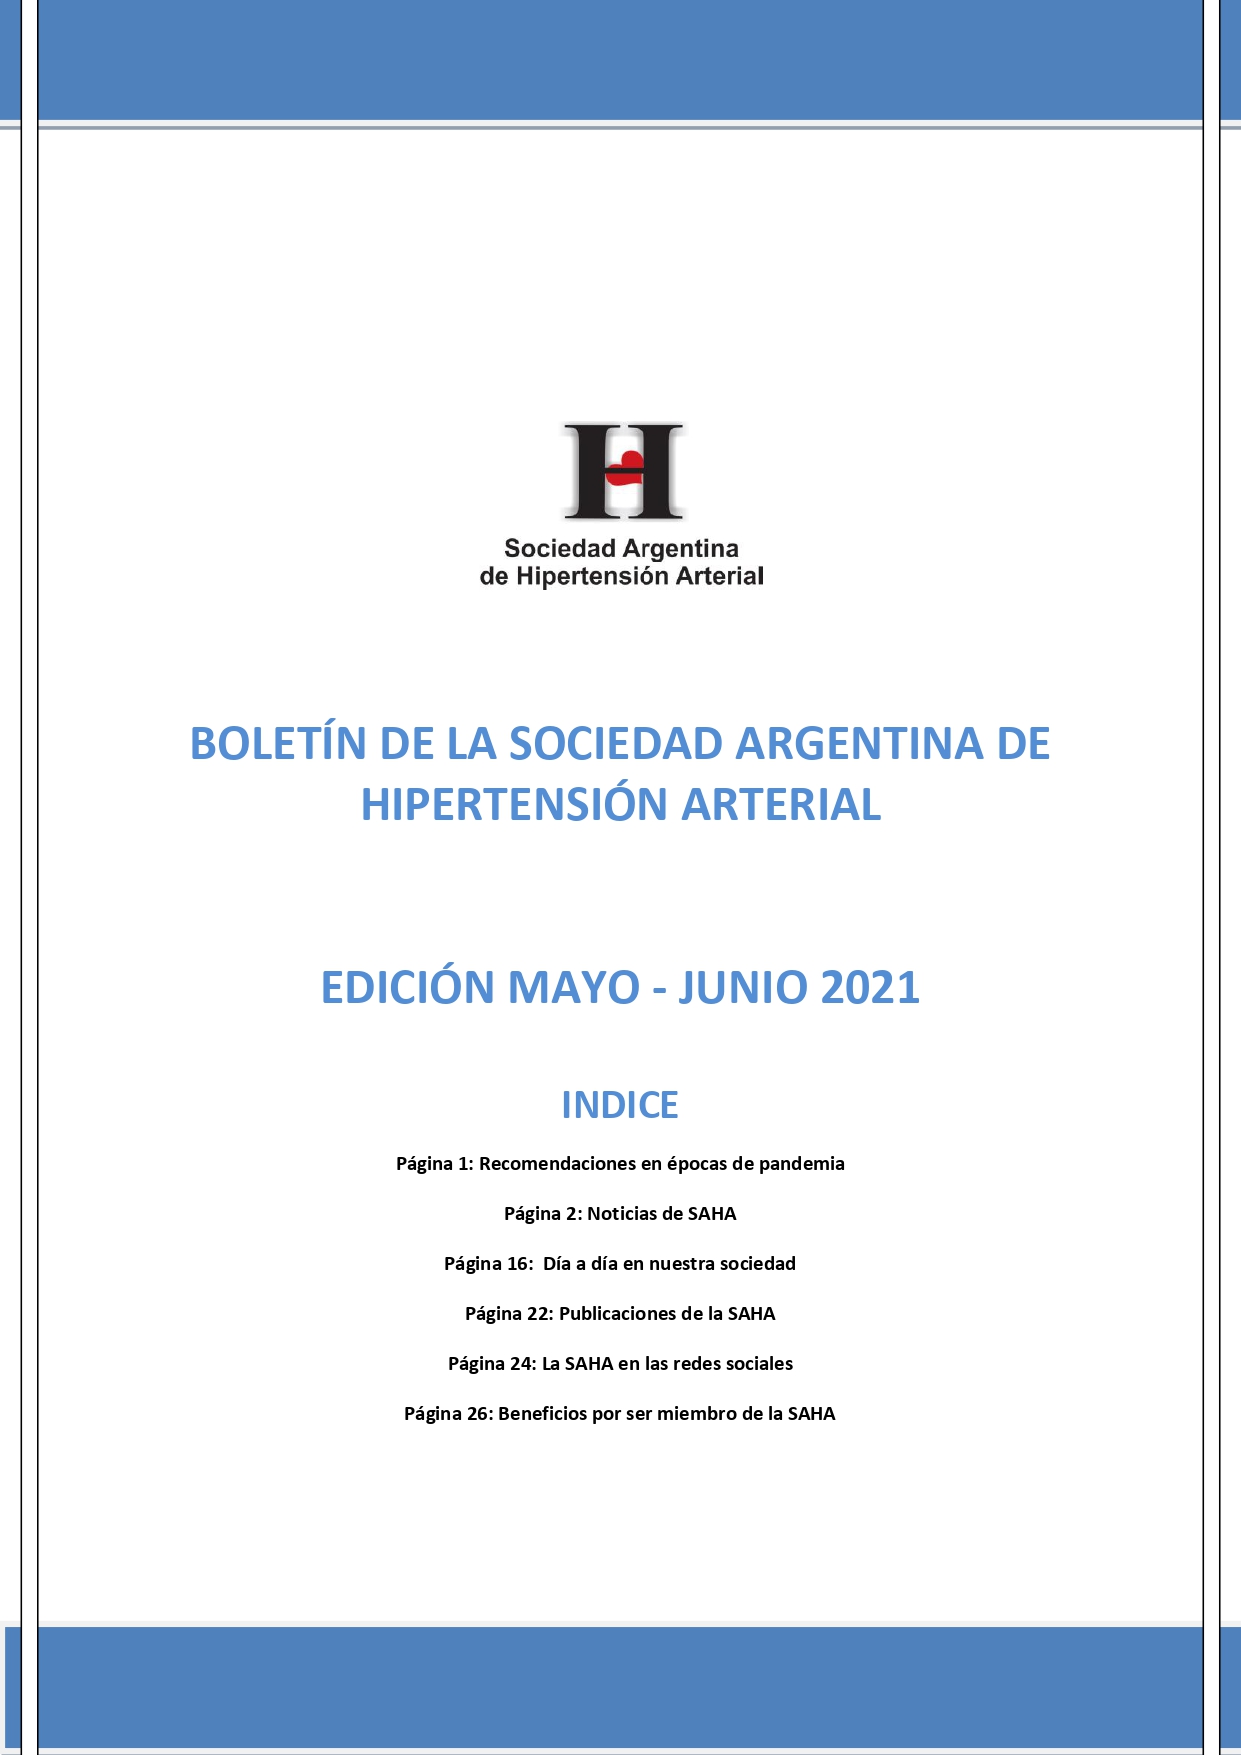 Boletín Periódico Sociedad Argentina de Hipertensión Arterial Mayo - Junio 2021